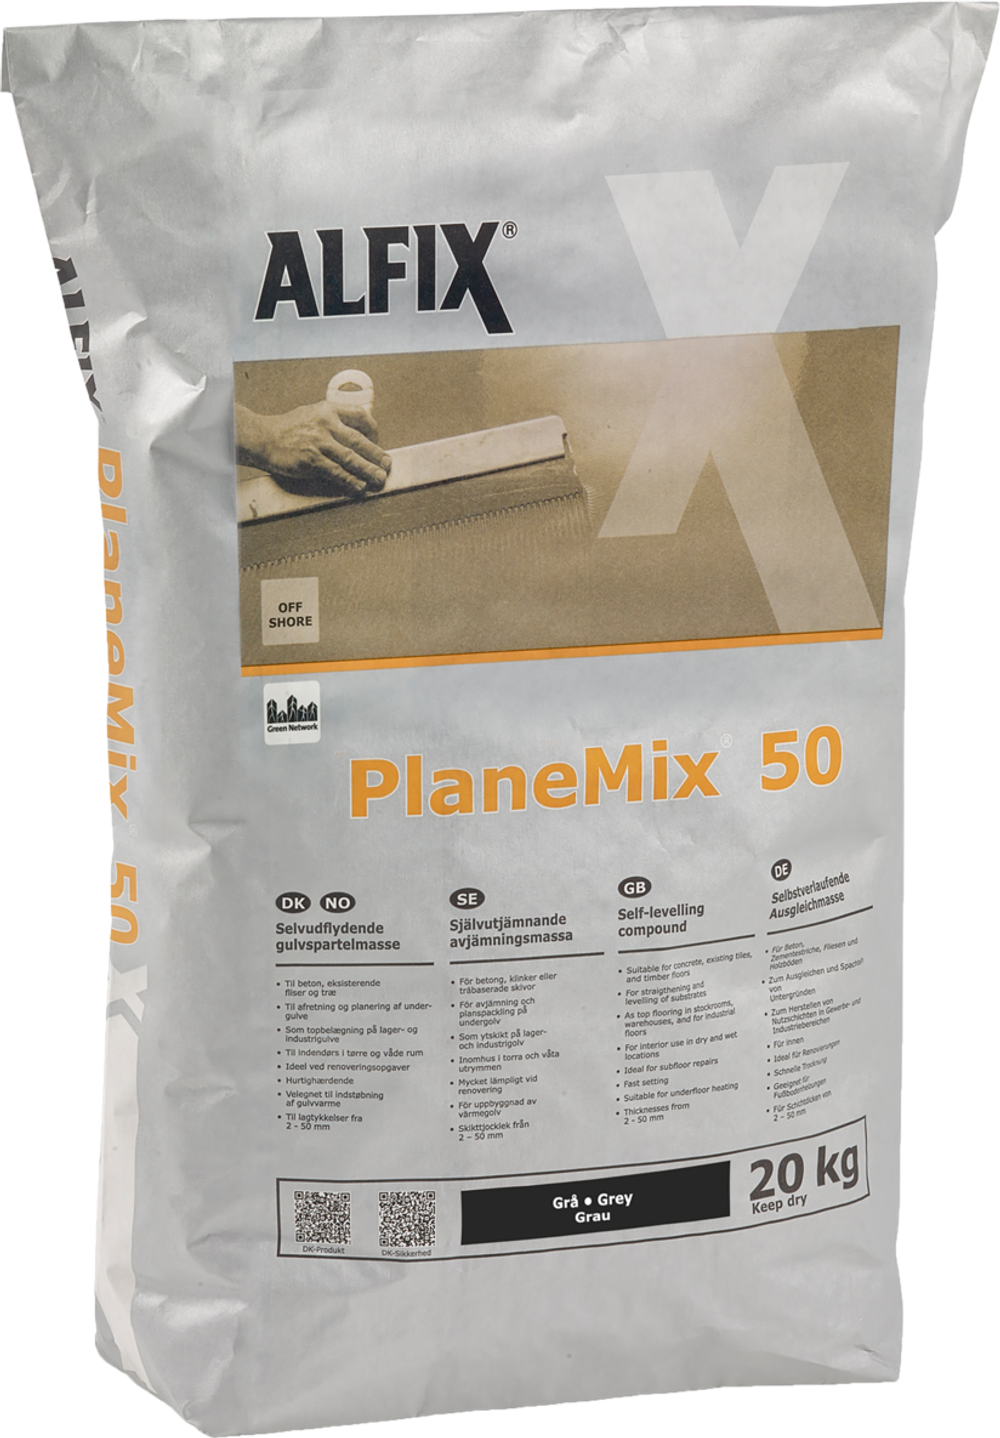 Tilbud på Planemix - 50 (Alfix) fra Bygma til 209,95 kr.